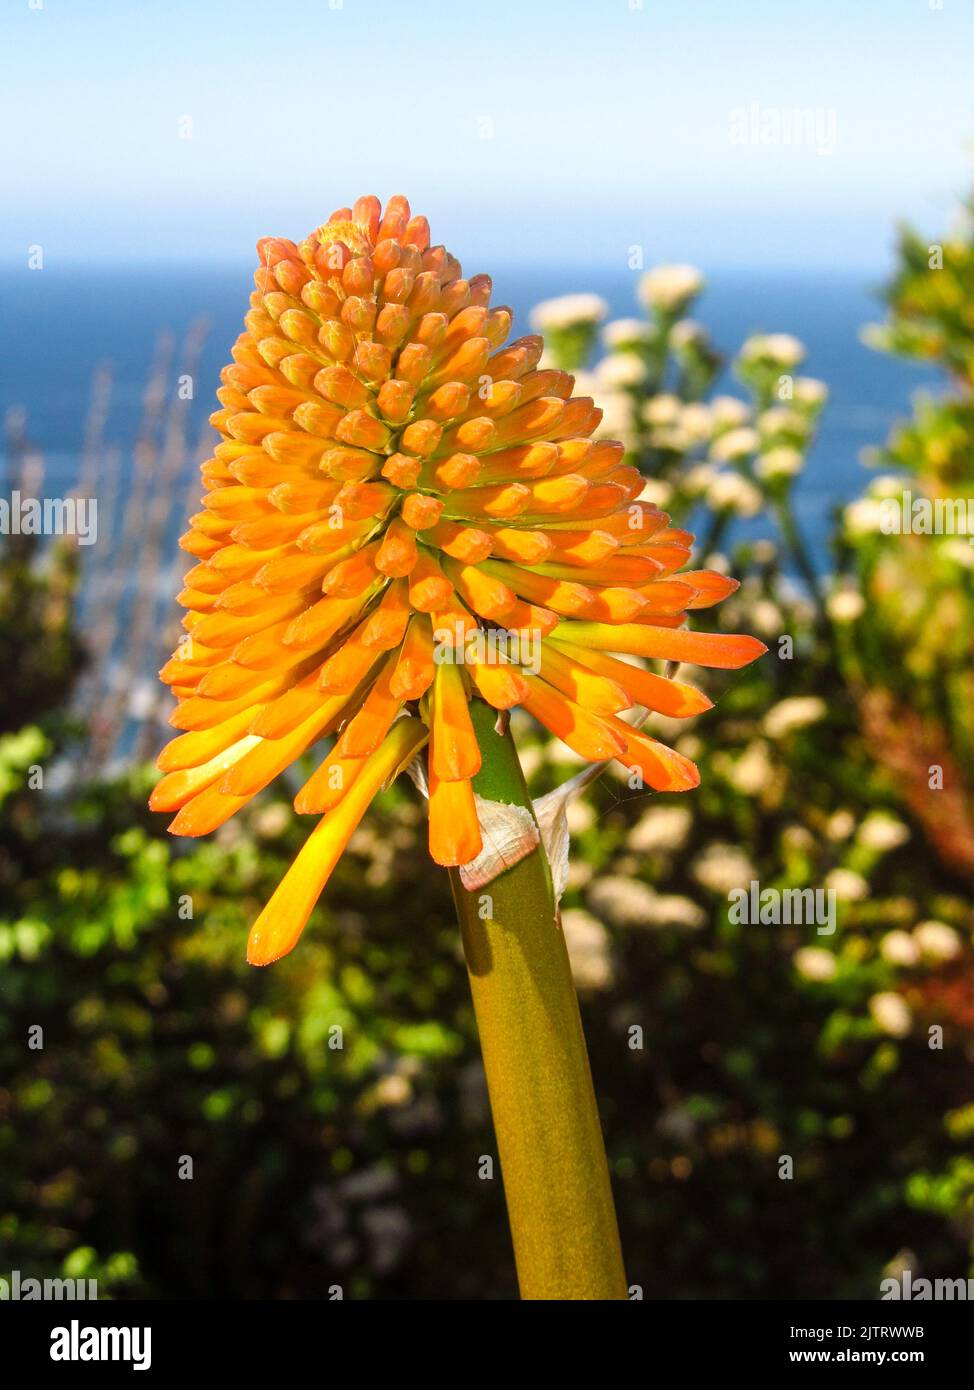 Die orangefarbene Blütenknospe eines Cape Poker, Kniphofia Uvaria, wächst zwischen den Fynbos auf den Klippen der Tsitsikamma-Küste Südafrikas. Stockfoto